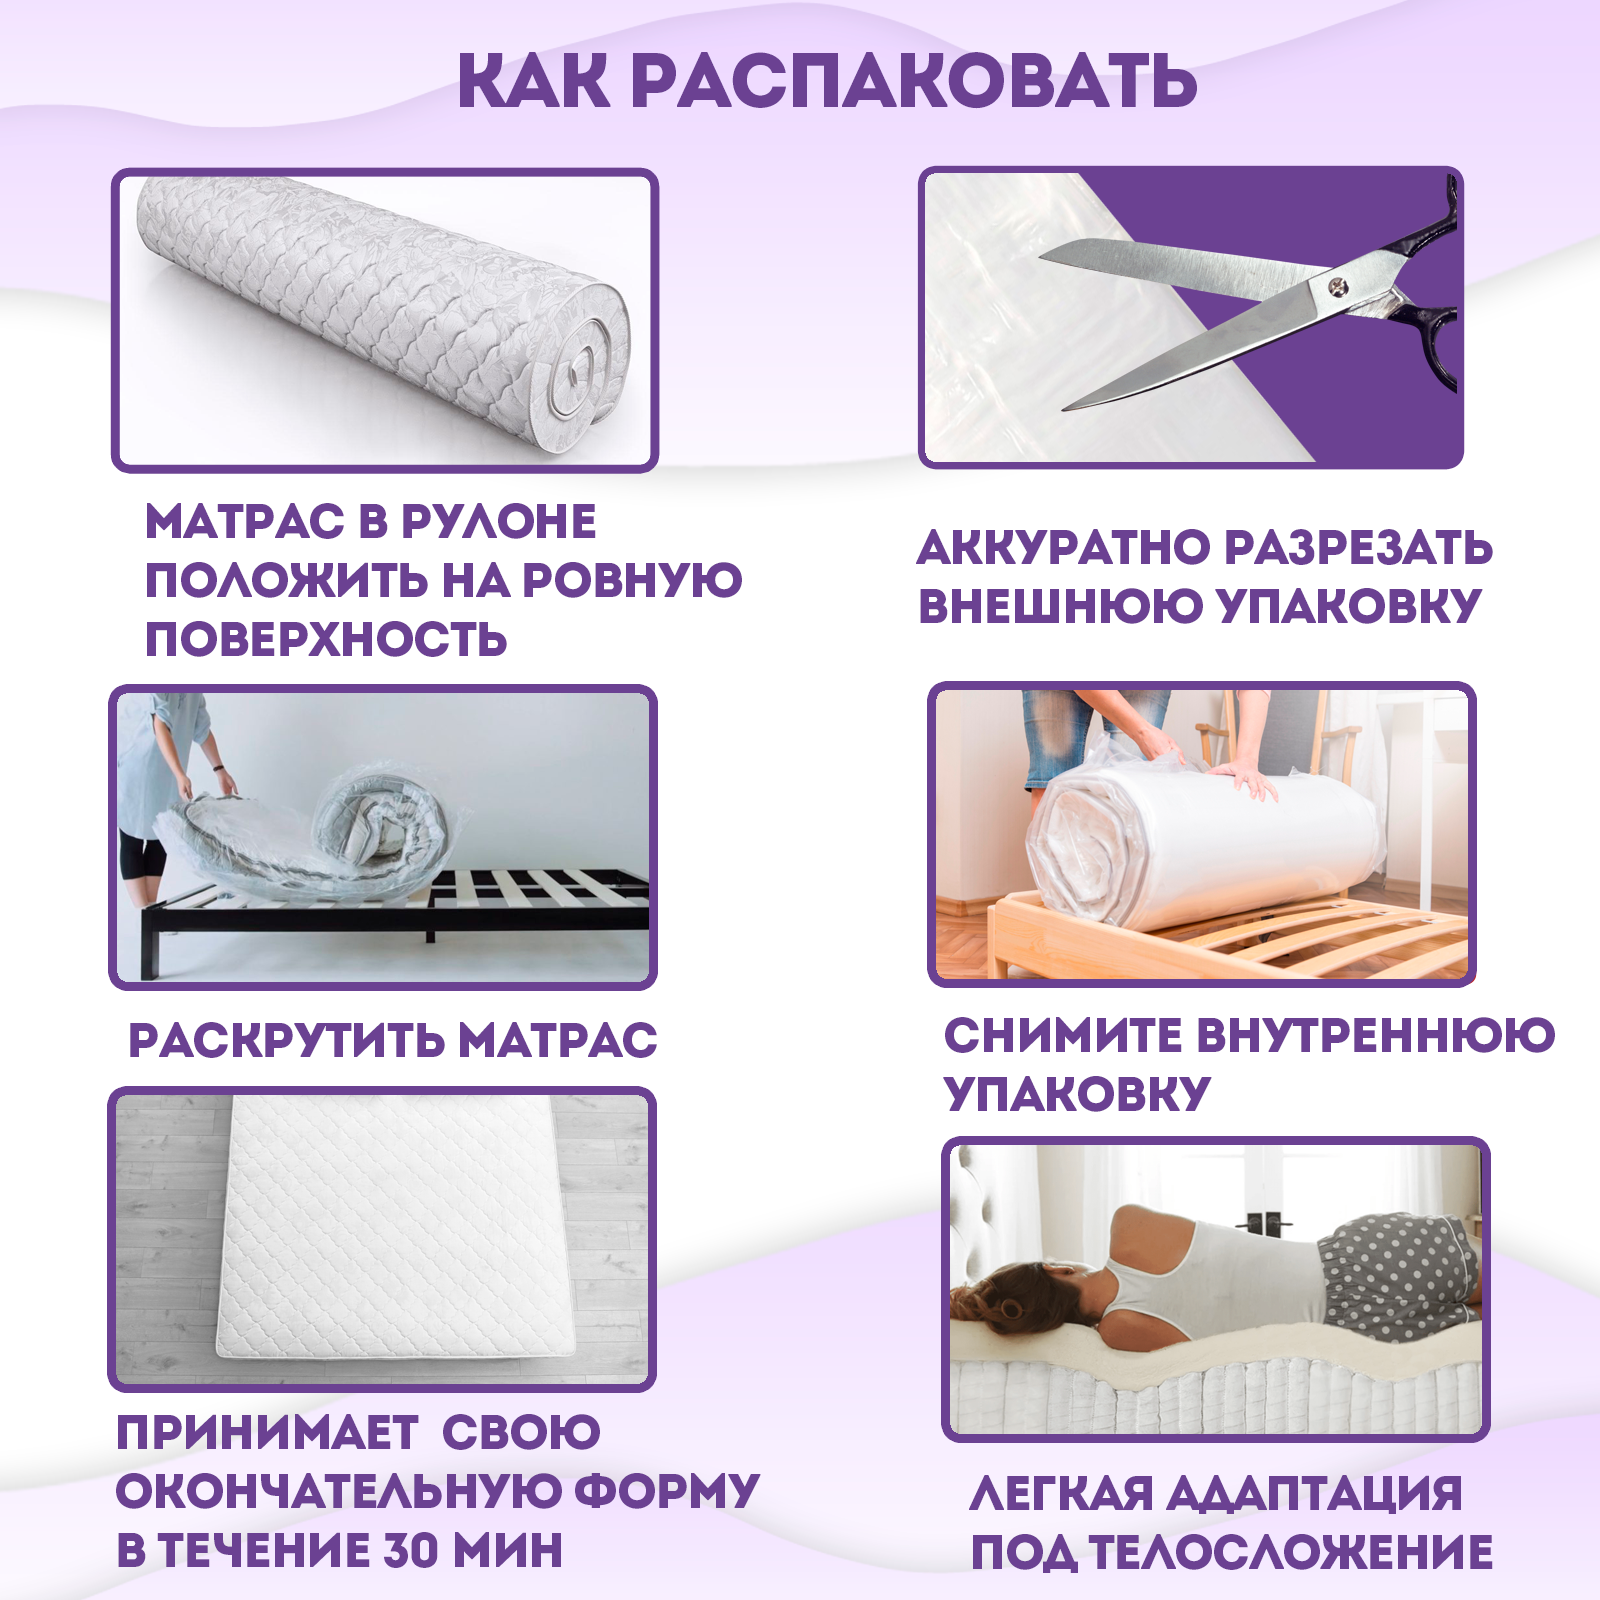 Ортопедический матрас Beautyson Foam 10 Massage Double без клея, 120х200, 16 см, беспружинный, полутороспальный, на кровать, для дивана, мягкий